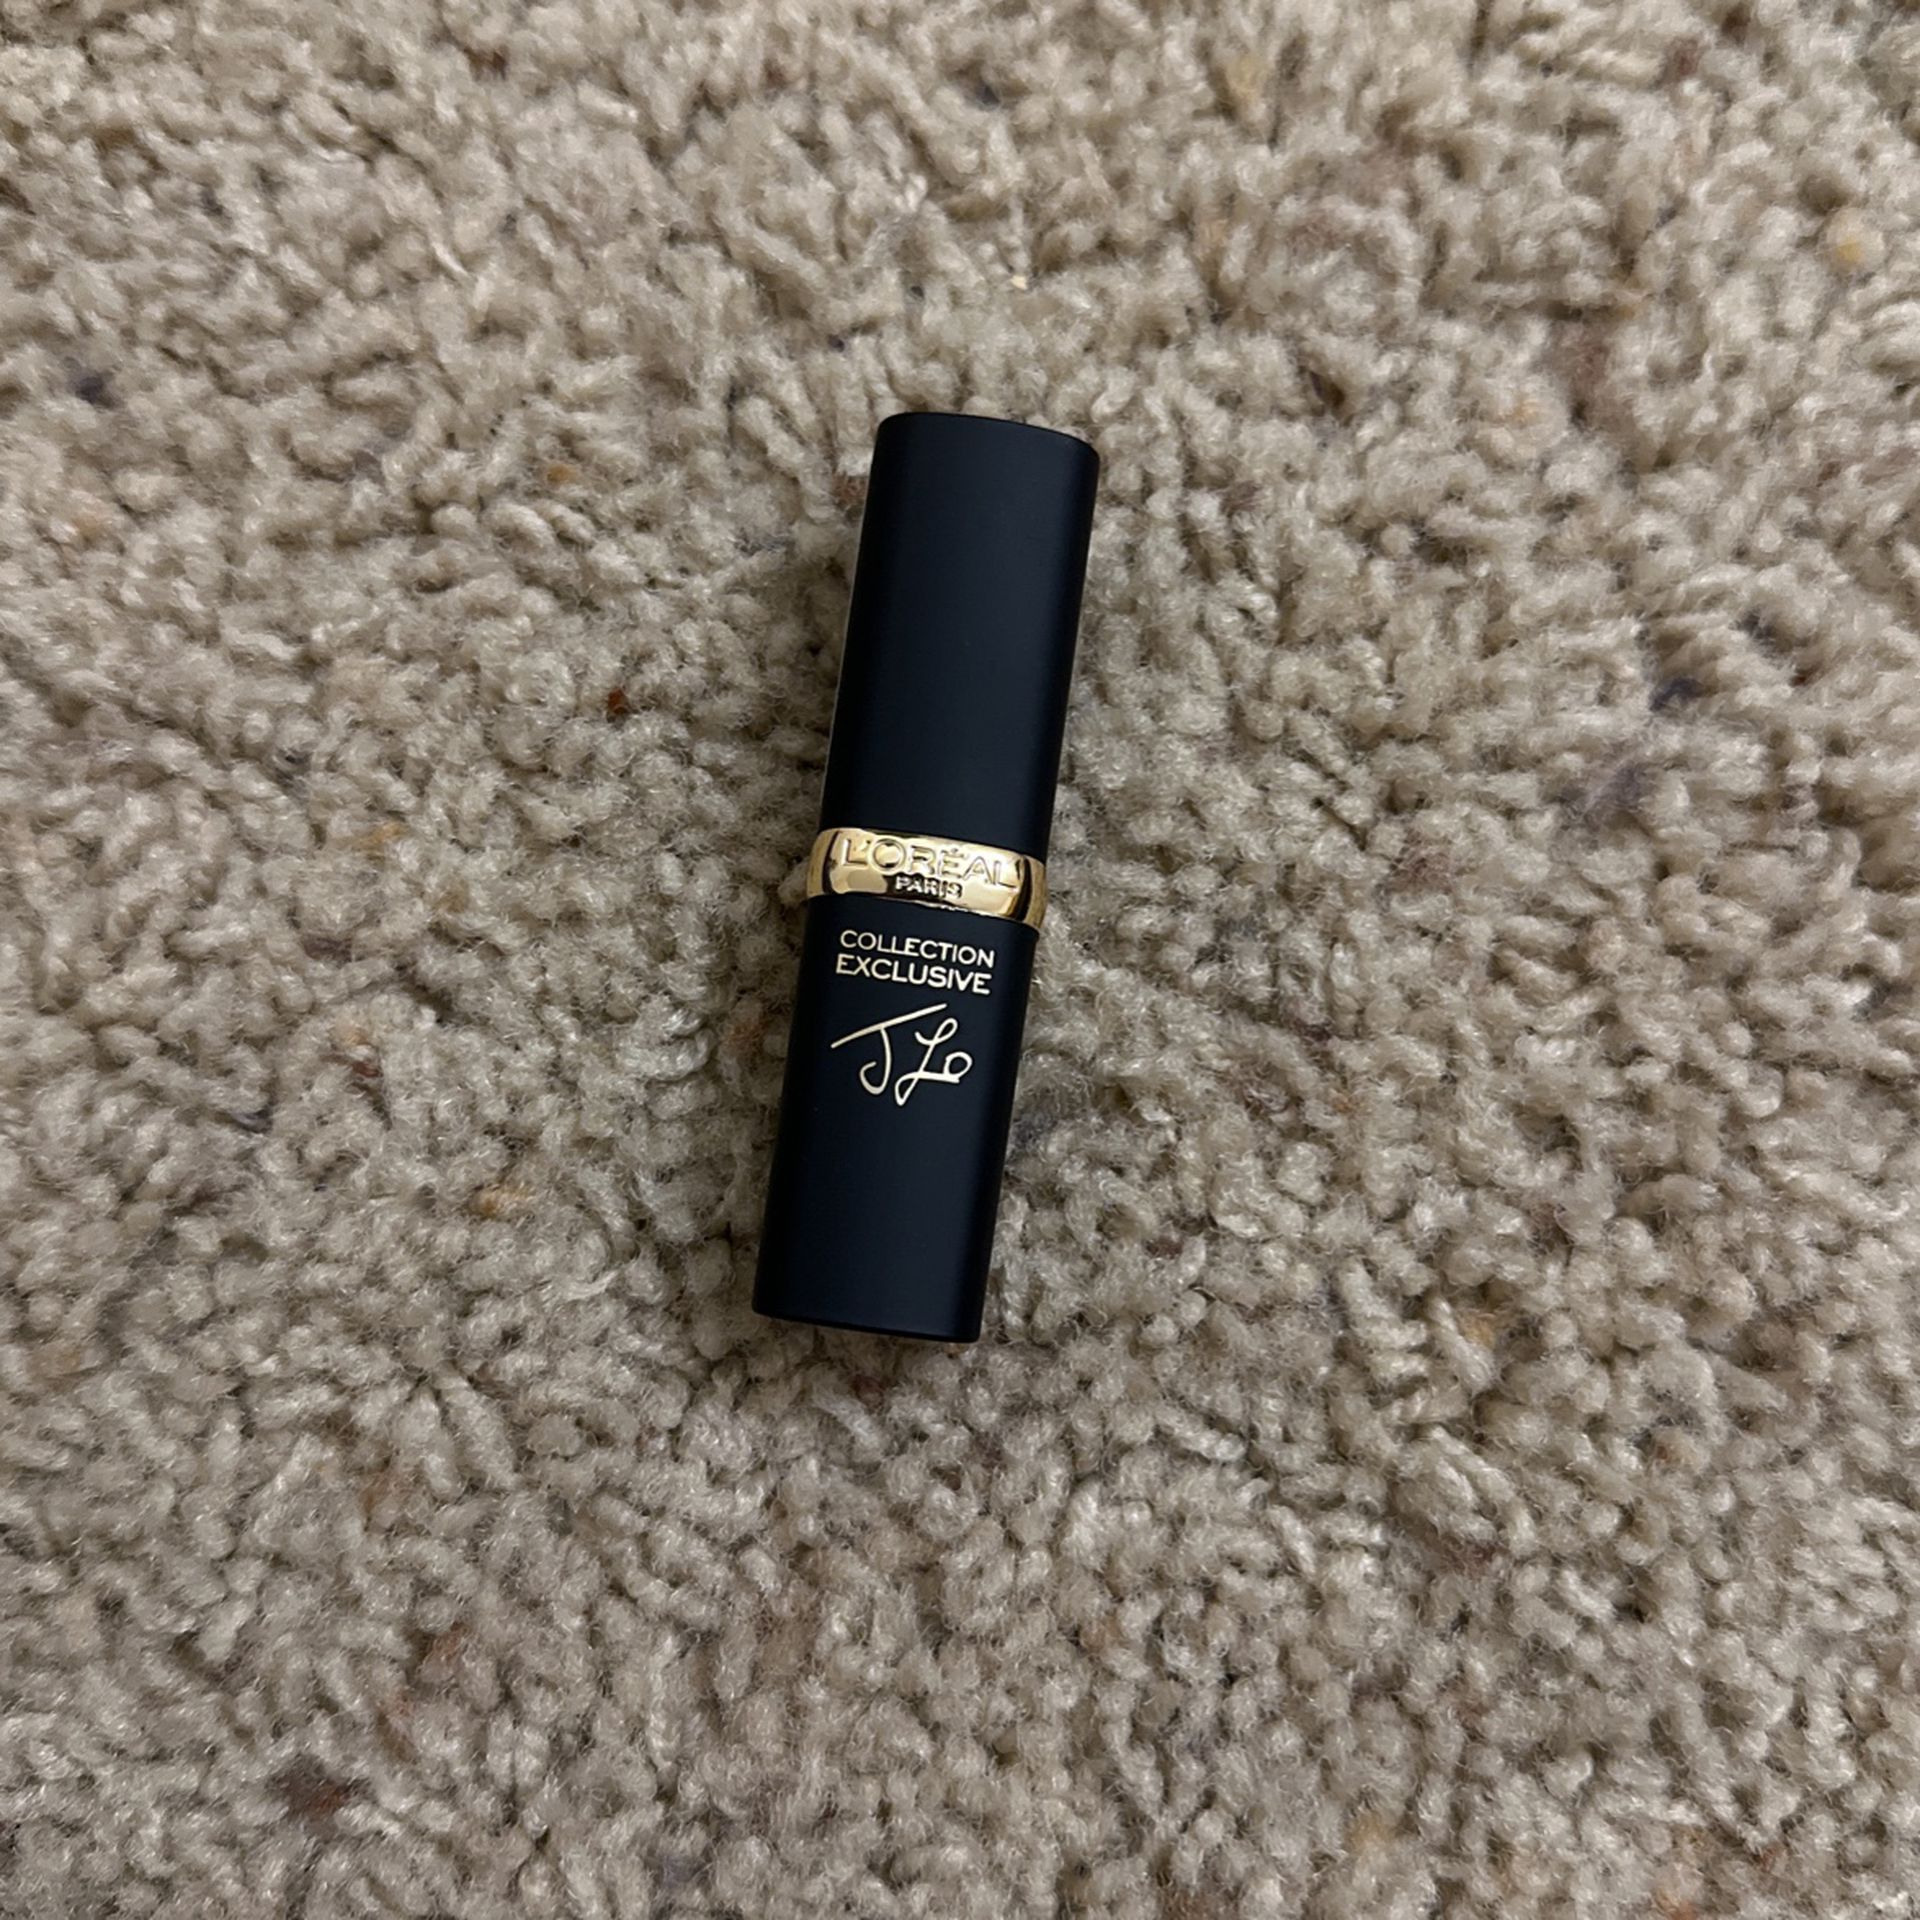 L'Oréal Paris Colour Riche Collection Exclusive Lipstick, Jennifer's Nude, 0.13 oz.